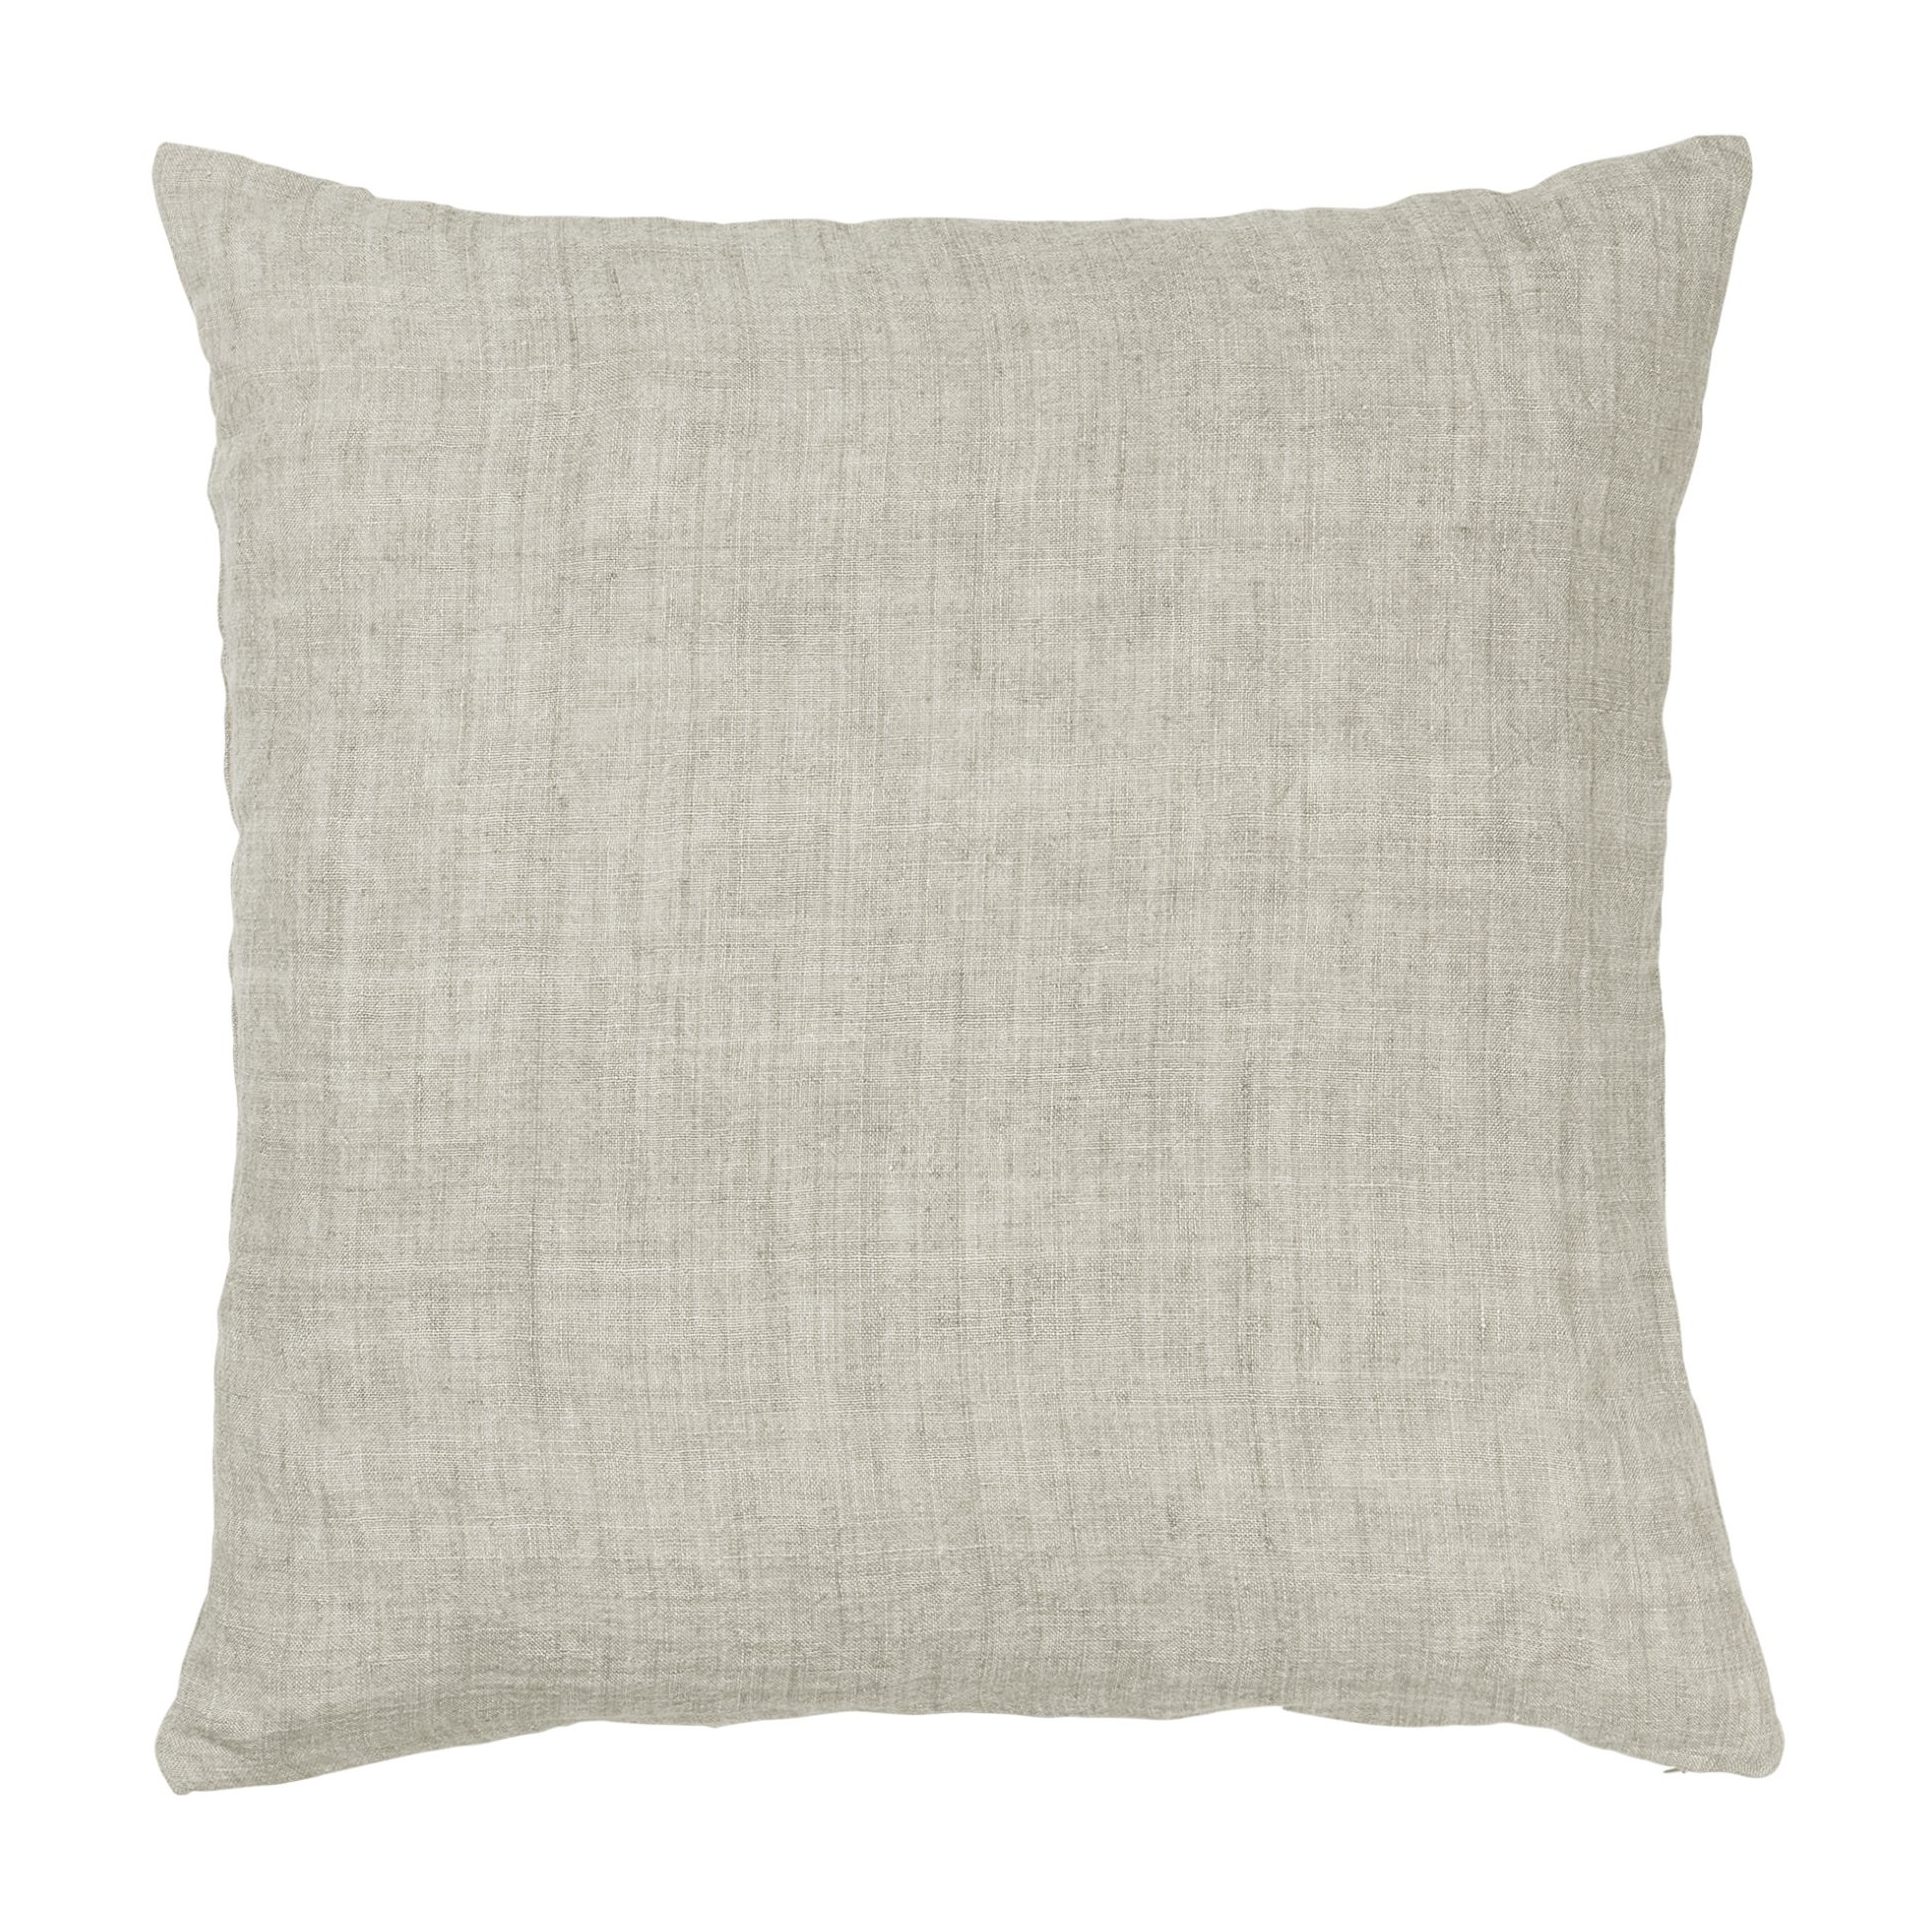 Cozy Living Cashmere Linen Square Cushion